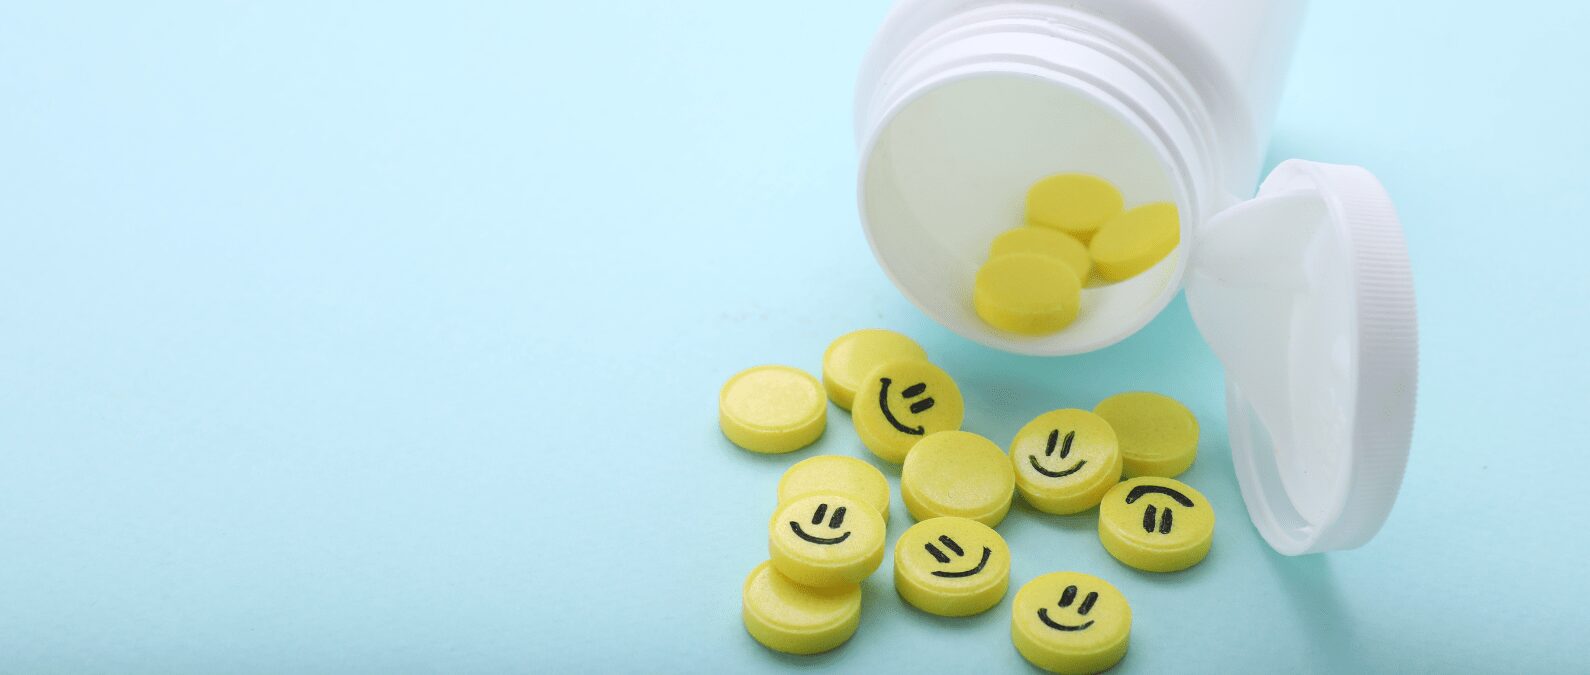 antidepressant medication pills